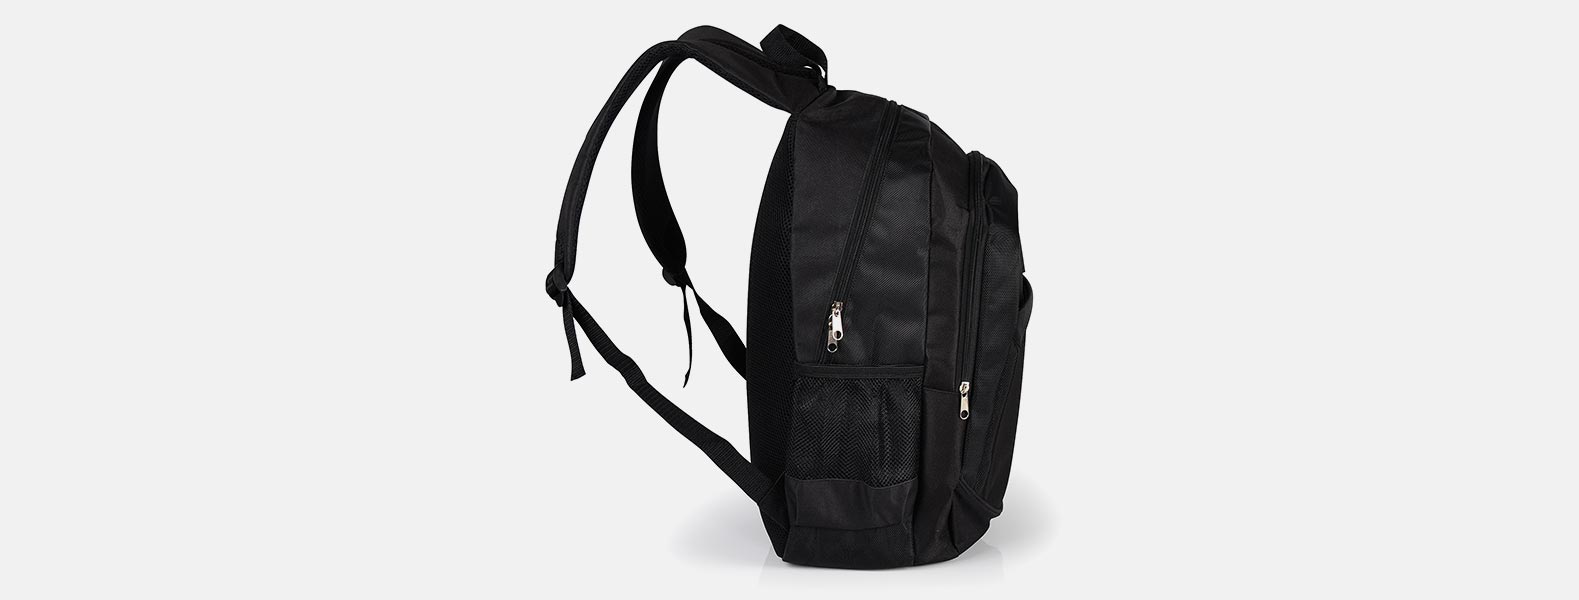 Mochila preta em Poliester 600D/1680D com alças para as costas, alça para as mãos, compartimento para notebook de até 15, 3 bolsos externos com zíper e 2 bolsos externos em tela.